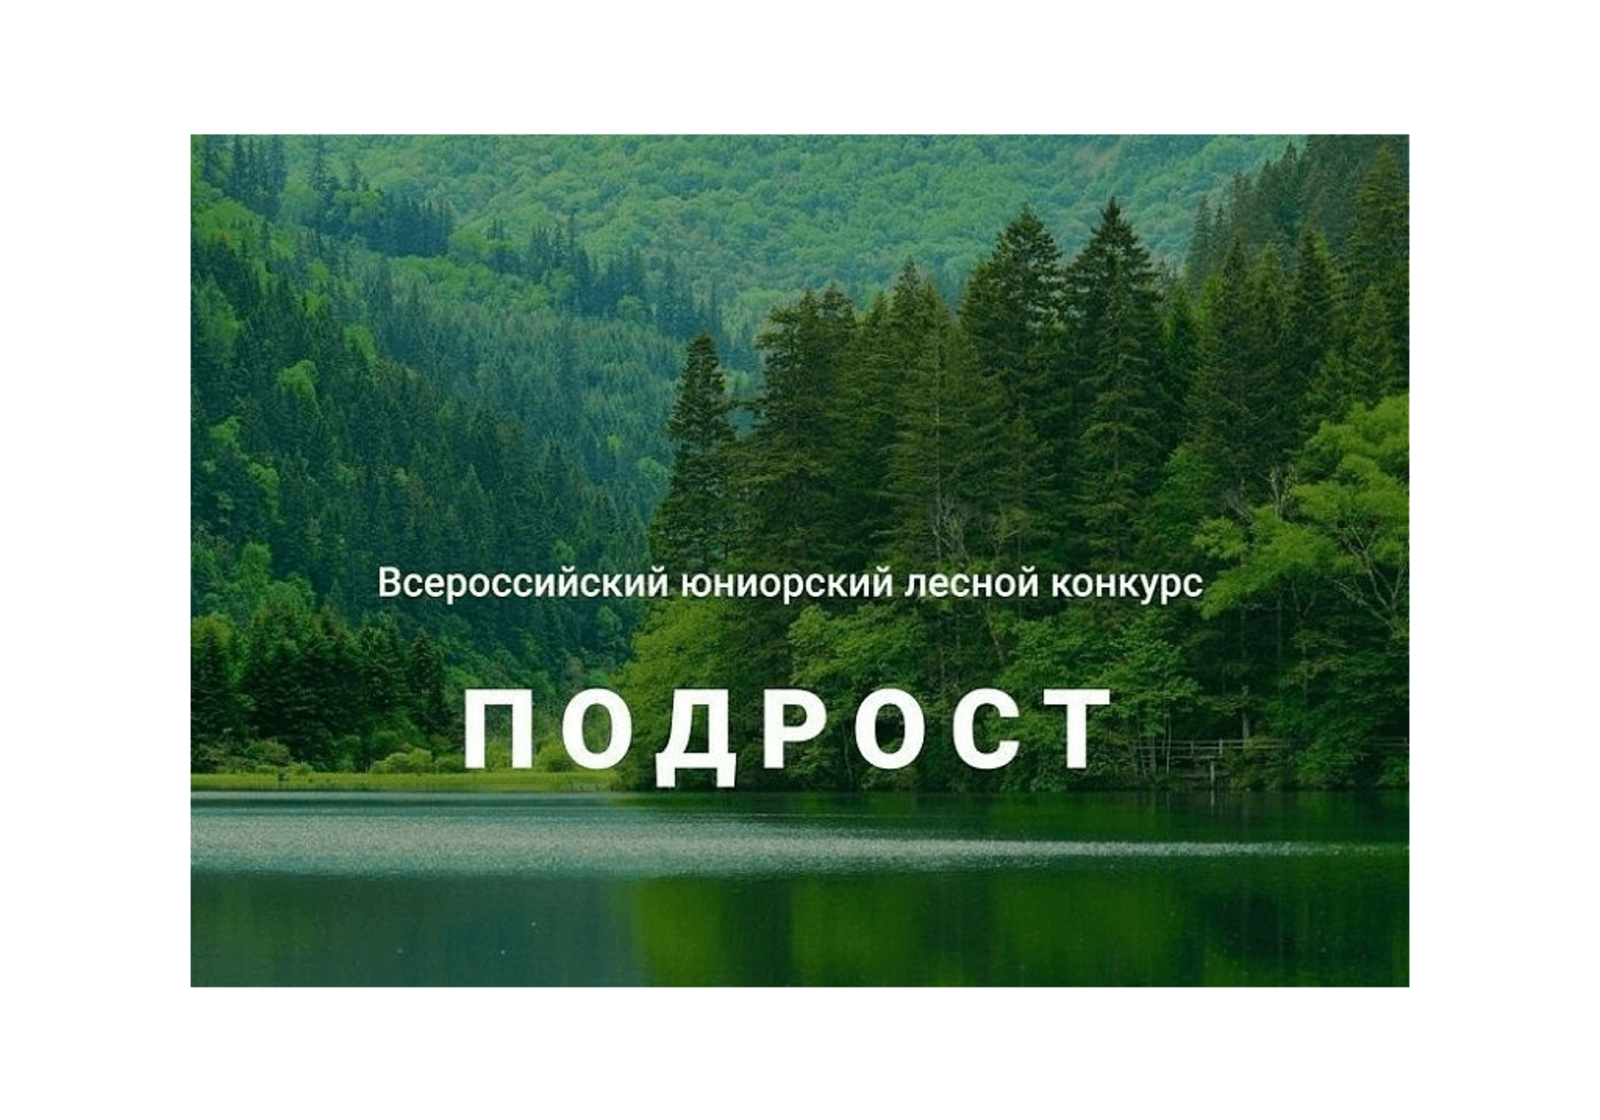 Завершился прием работ на региональный этап Всероссийского юниорского лесного конкурса «Подрост»